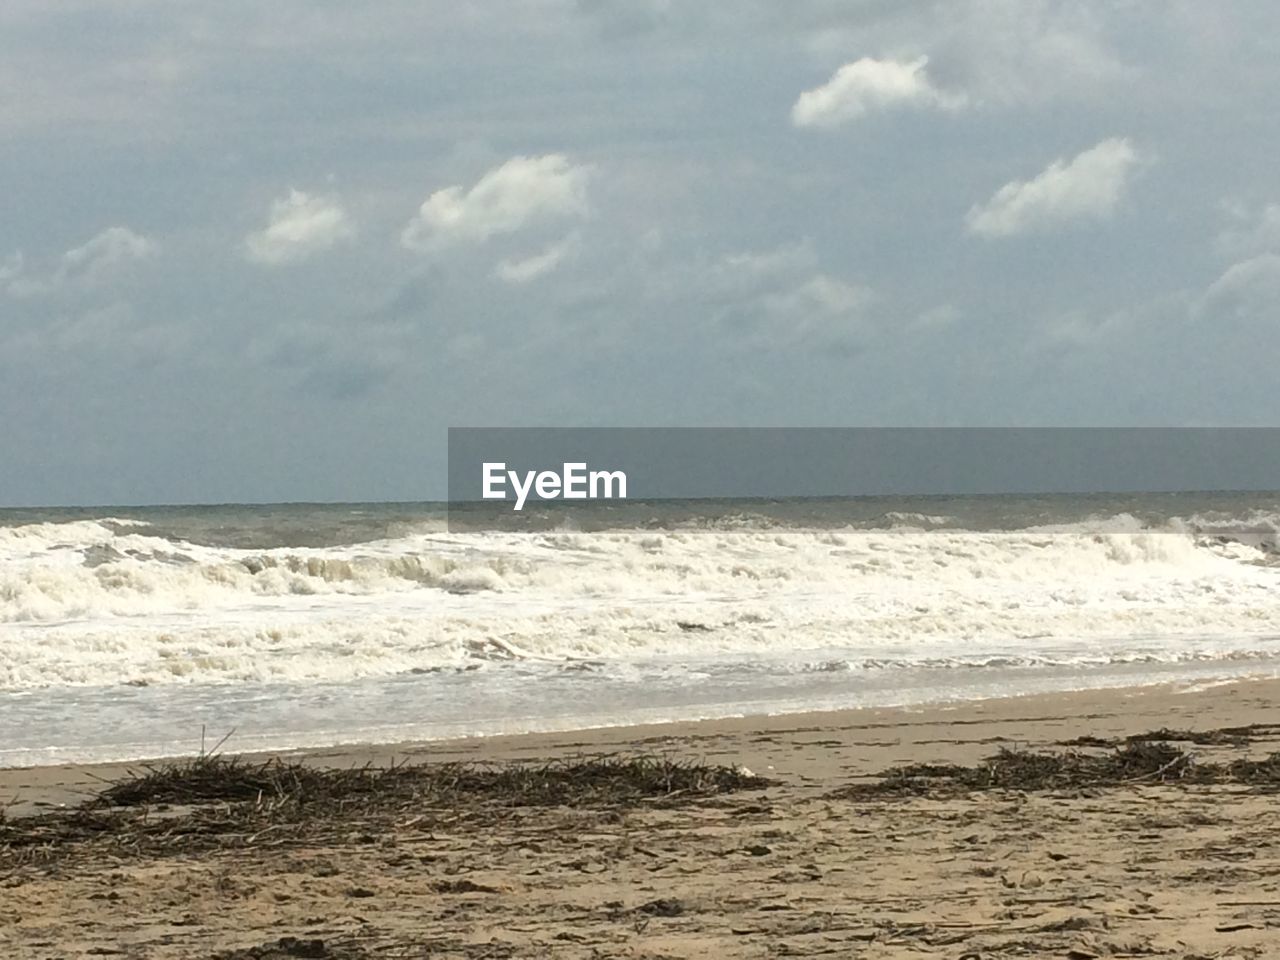 SCENIC VIEW OF BEACH